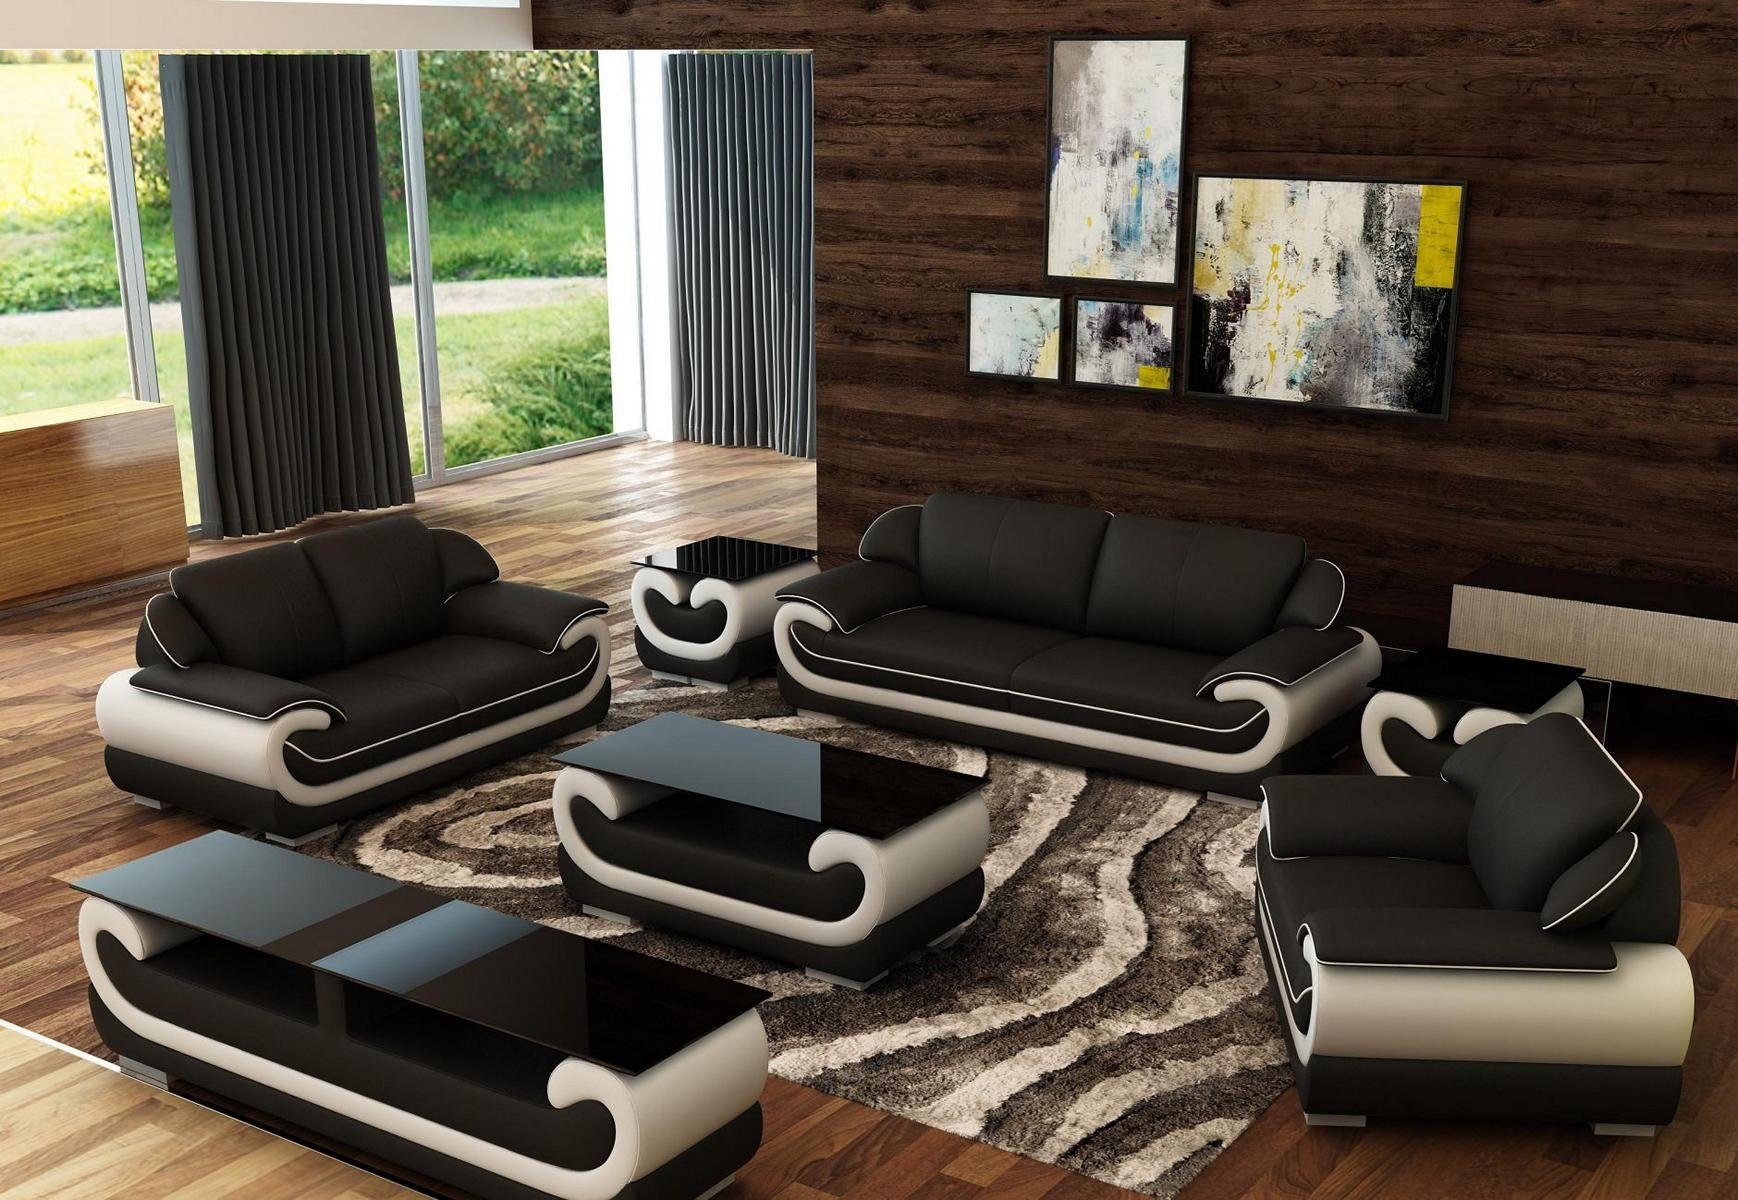 JVmoebel Wohnzimmer-Set Sofagarnitur 3+2+1 Sitzer 2x Beistelltisch Sideboard Hocker 7tlg.Set Schwarz/Beige